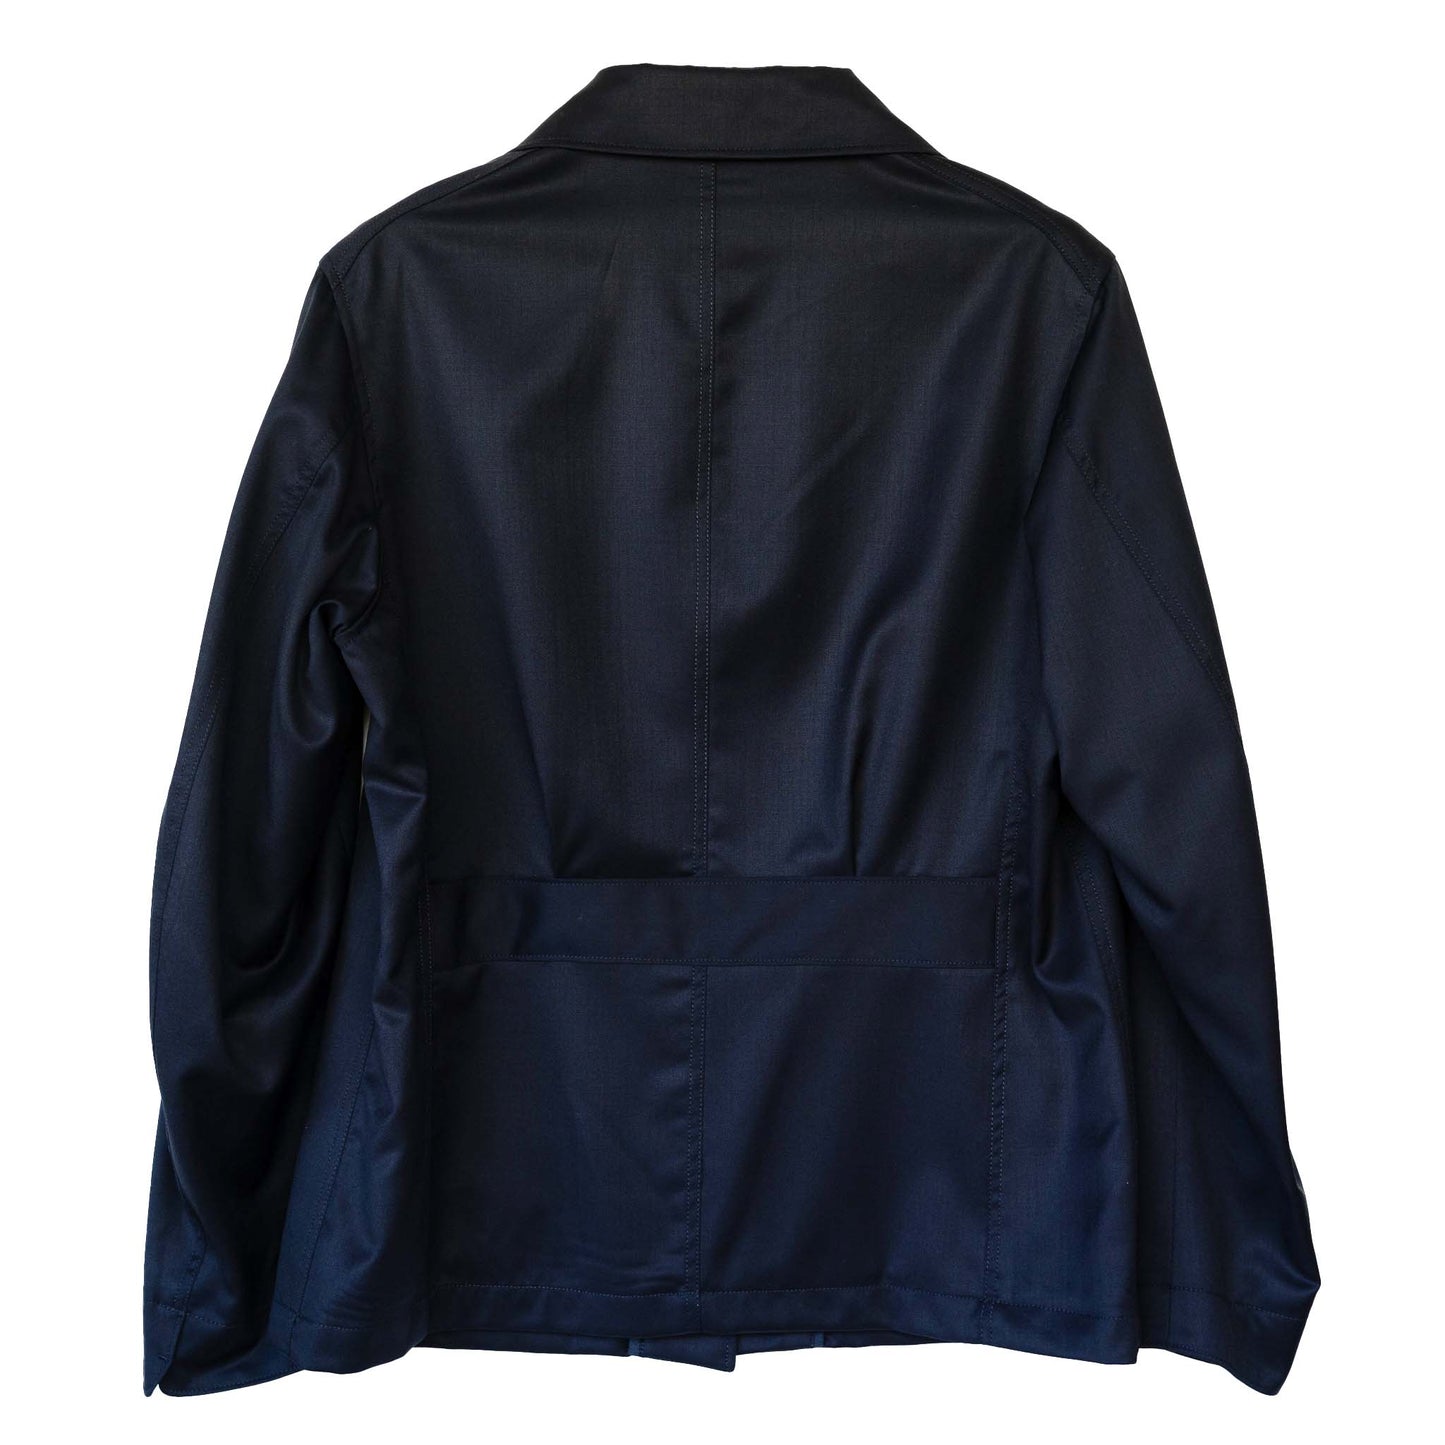 COLONY CLOTHING / REDA ウール フィールドジャケット / CC2202-JK05-5